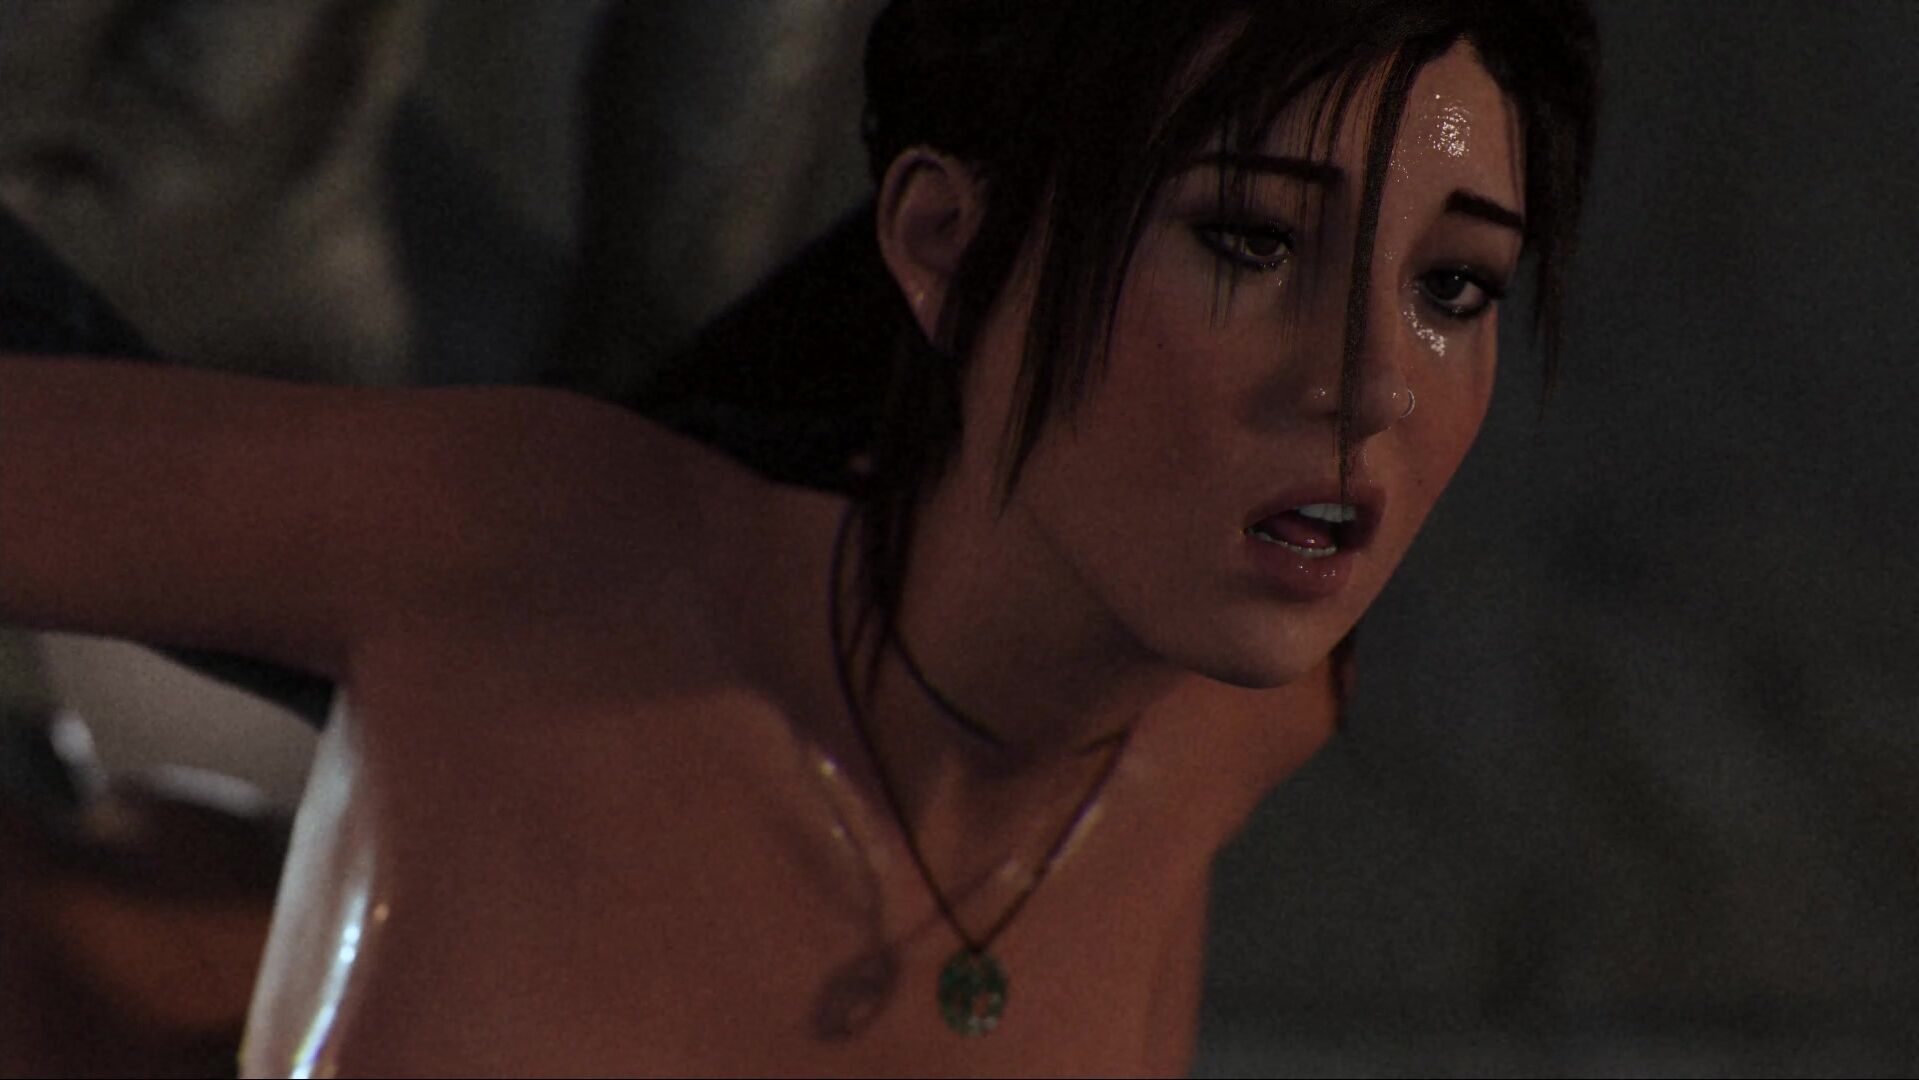 1919px x 1080px - Evil monsters rape tight anal Lara Croft! 3D porn Tomb Raider